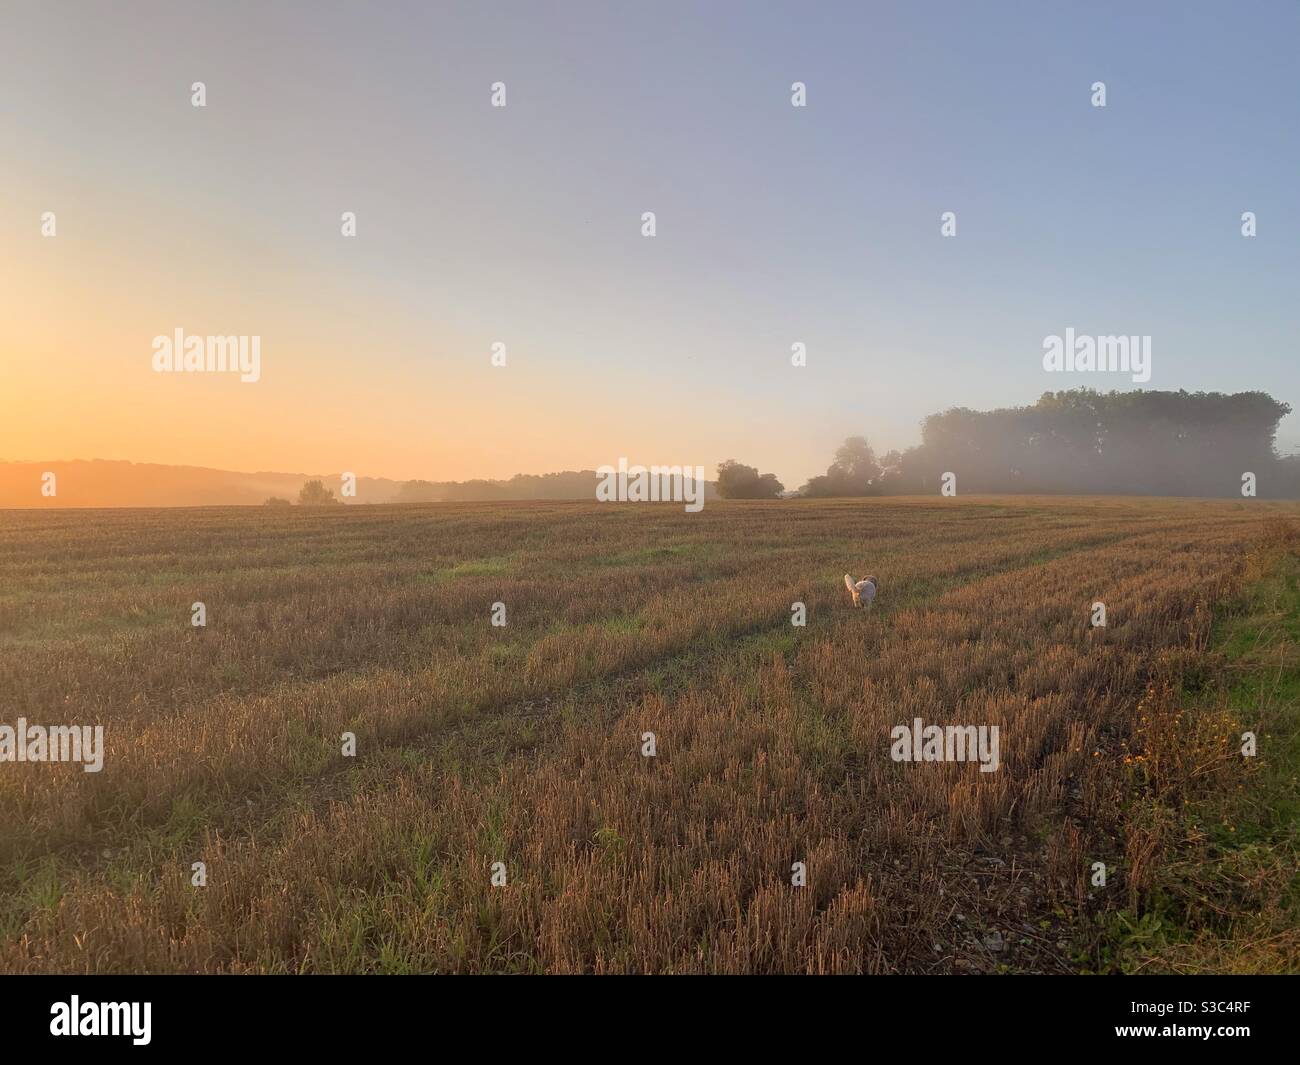 PET Cavapoo Hund läuft über bewirtschaftete Felder auf einem frühen Morgenspaziergang bei Sonnenaufgang. Goldenes und apricot Licht füllt den Himmel und badet die geernteten Felder Stockfoto